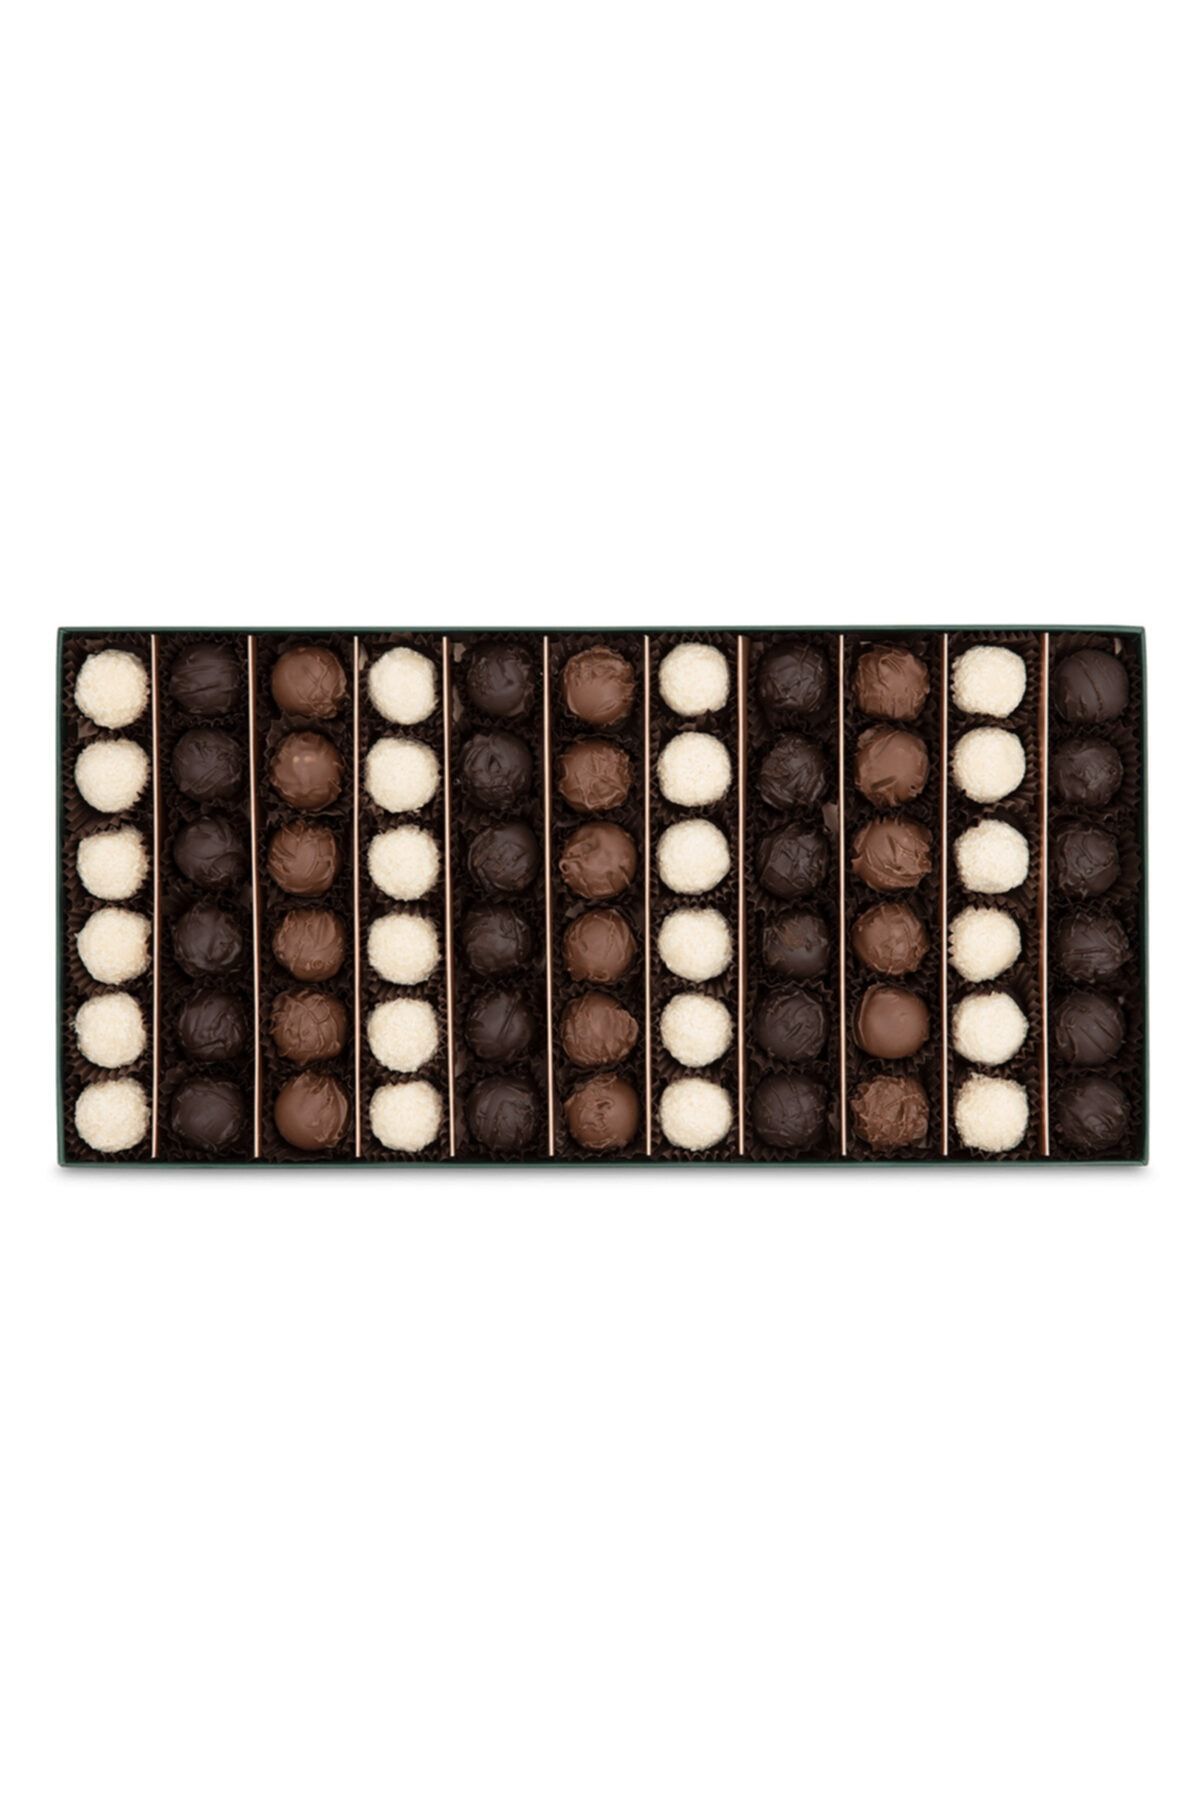 Kahve Dünyası Trüf Çikolata Premium Kutu 825g Fiyatı, Yorumları TRENDYOL